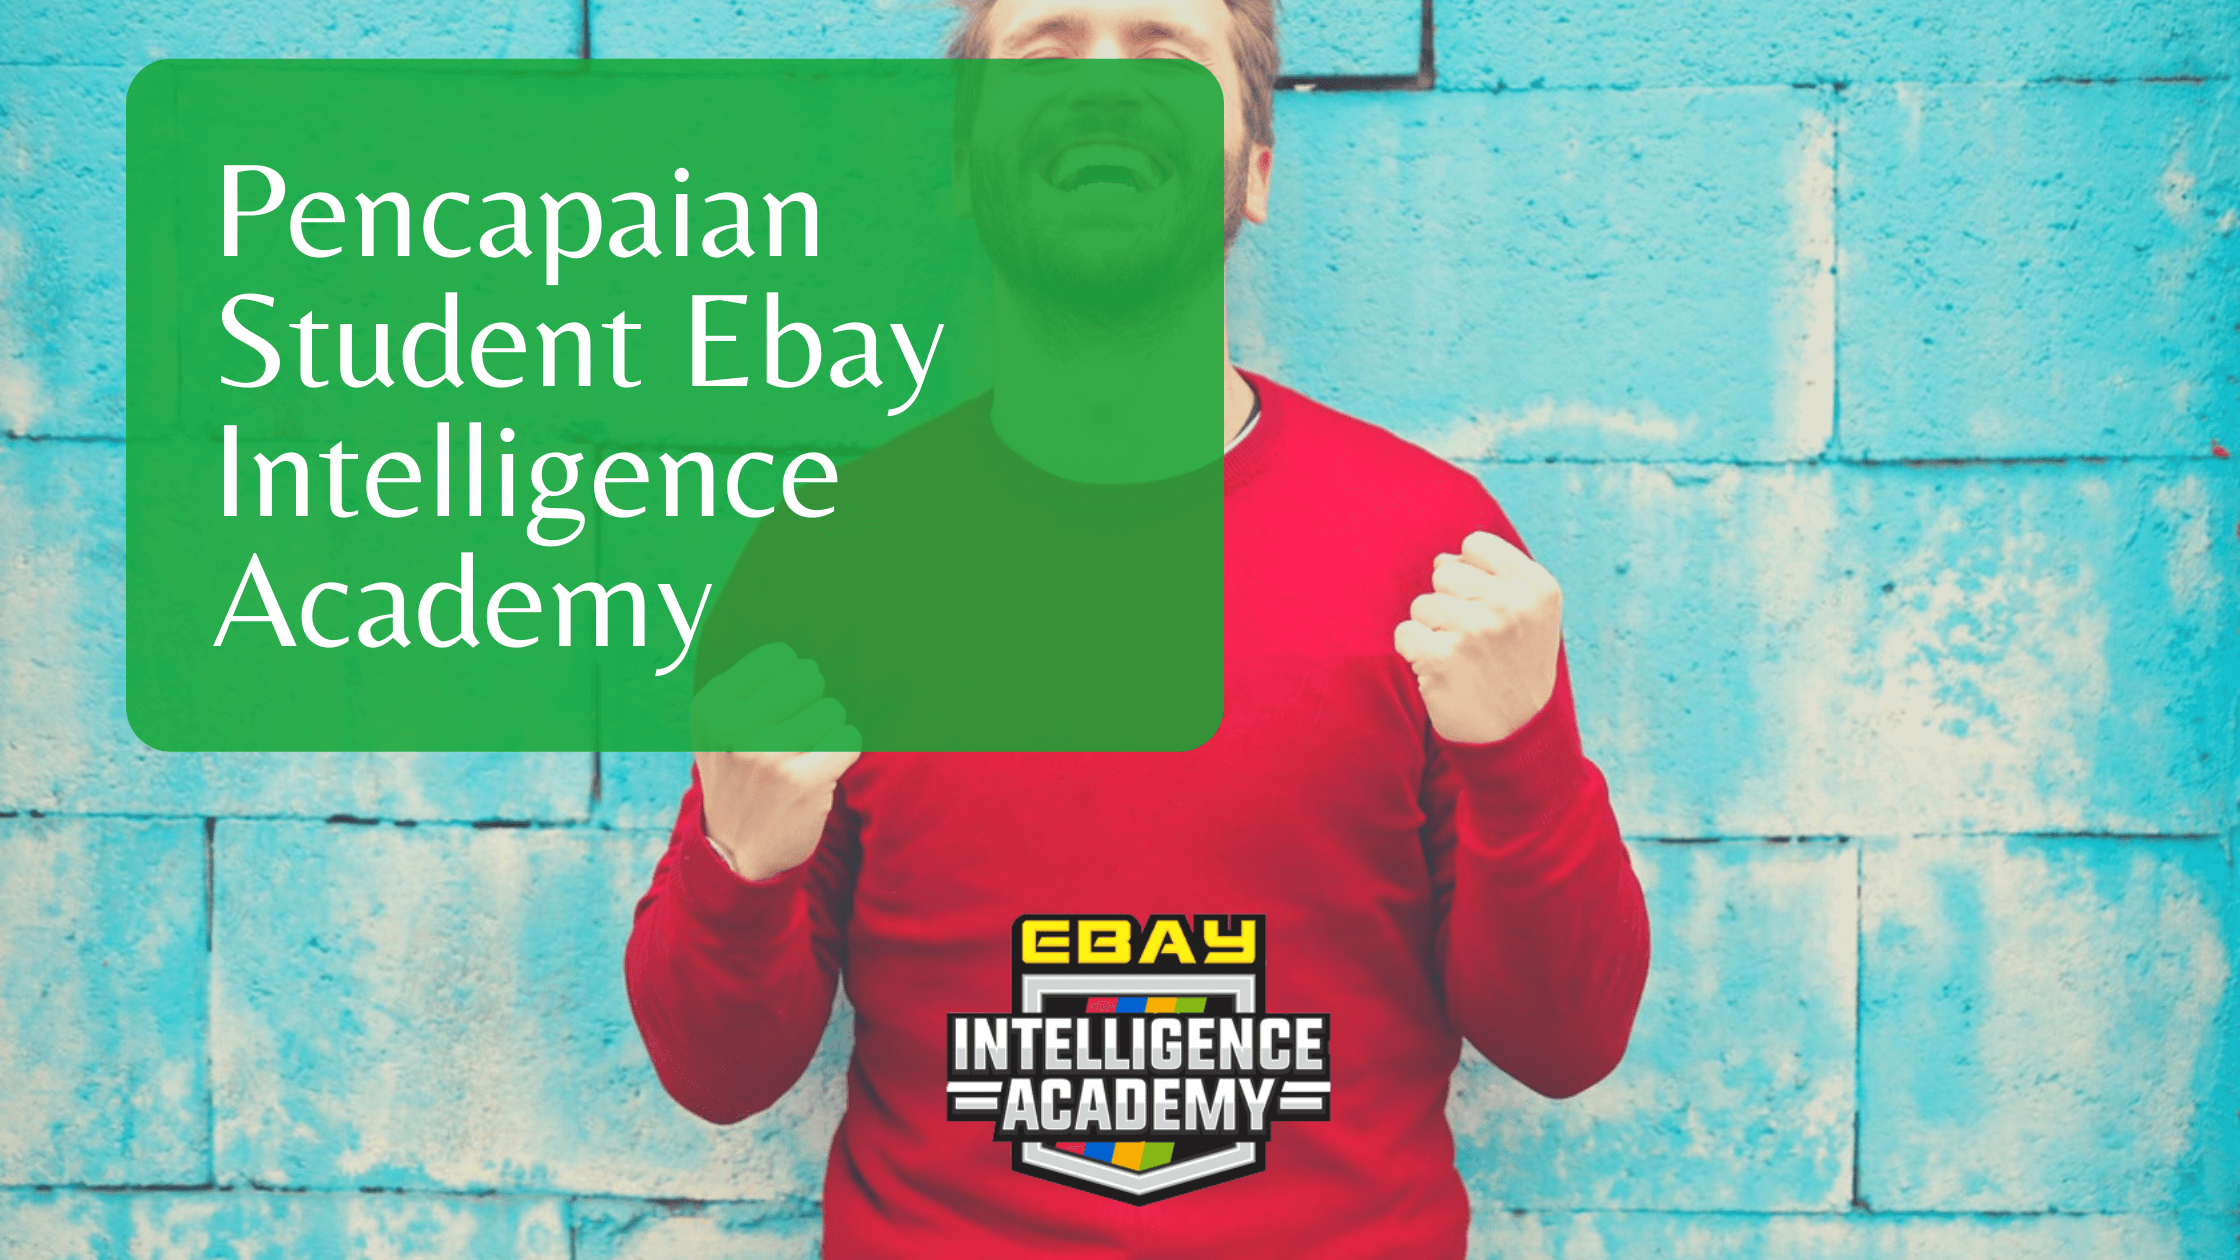 Pencapaian Student Ebay Intelligence Academy